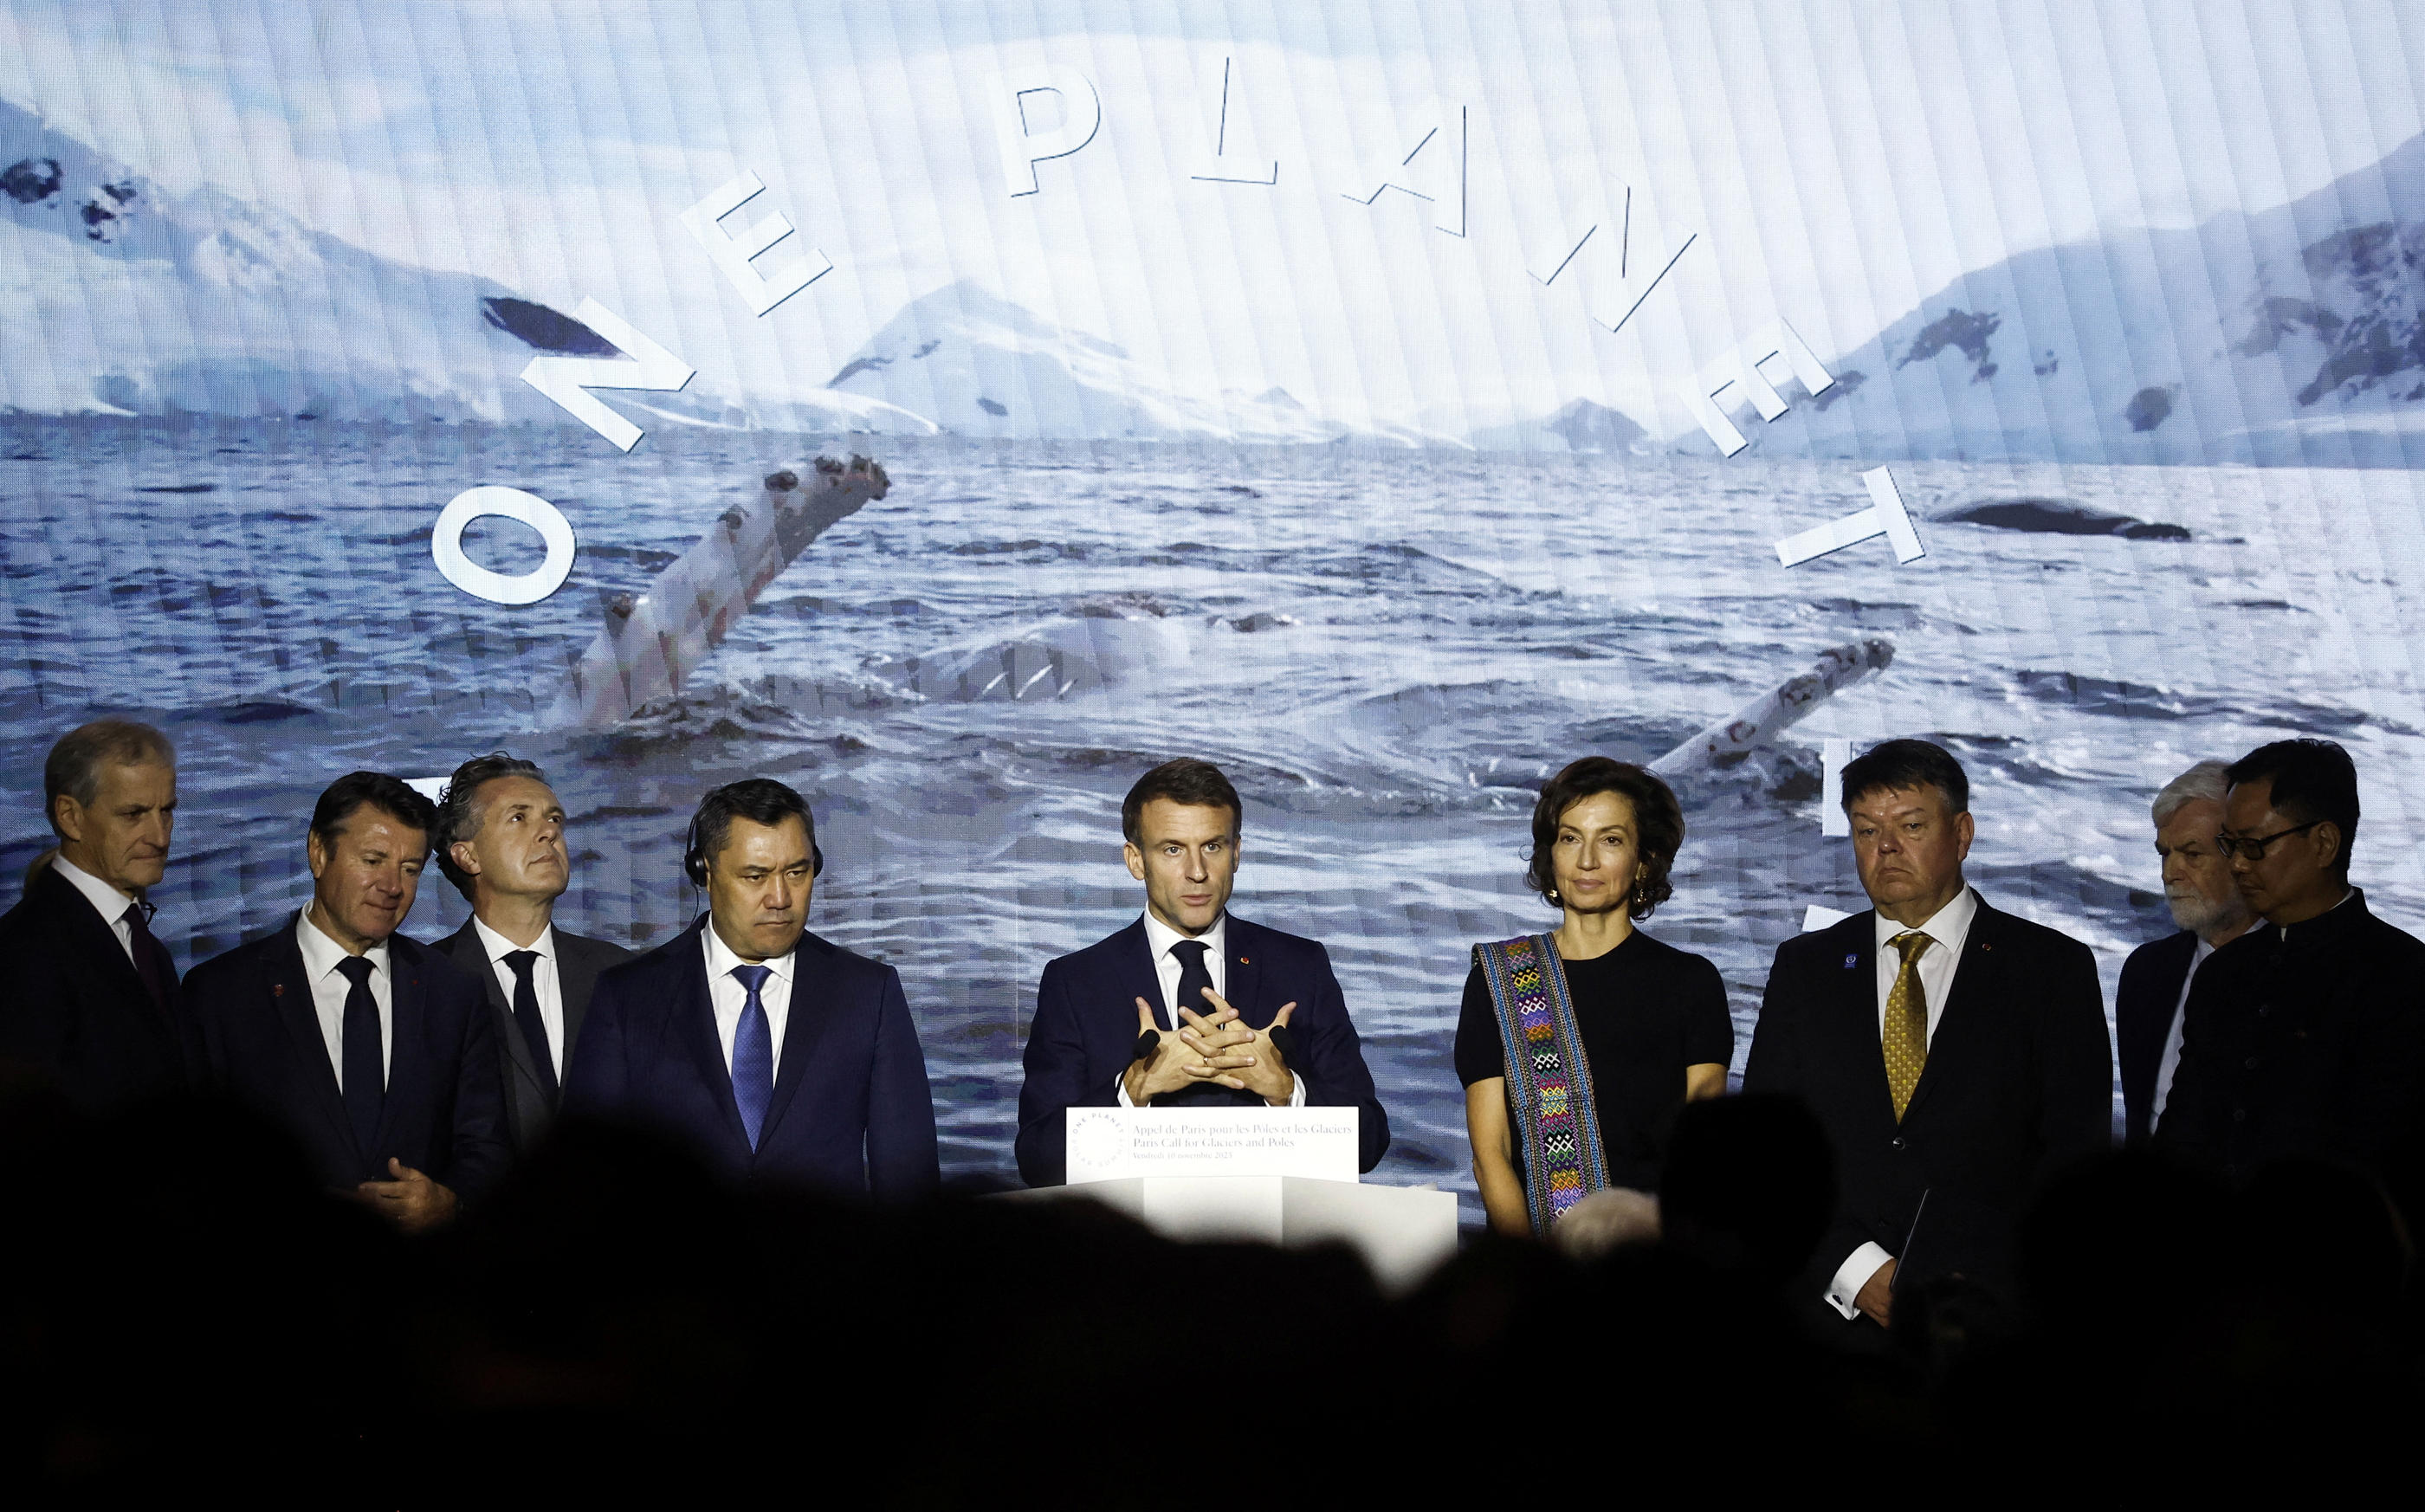 Autour d'Emmanuel Macron, 32 pays ont signé « l’appel de Paris pour les pôles et glaciers » dans la Grande Galerie de l'évolution, ce vendredi. Pool via Reuters/Yoan Valat